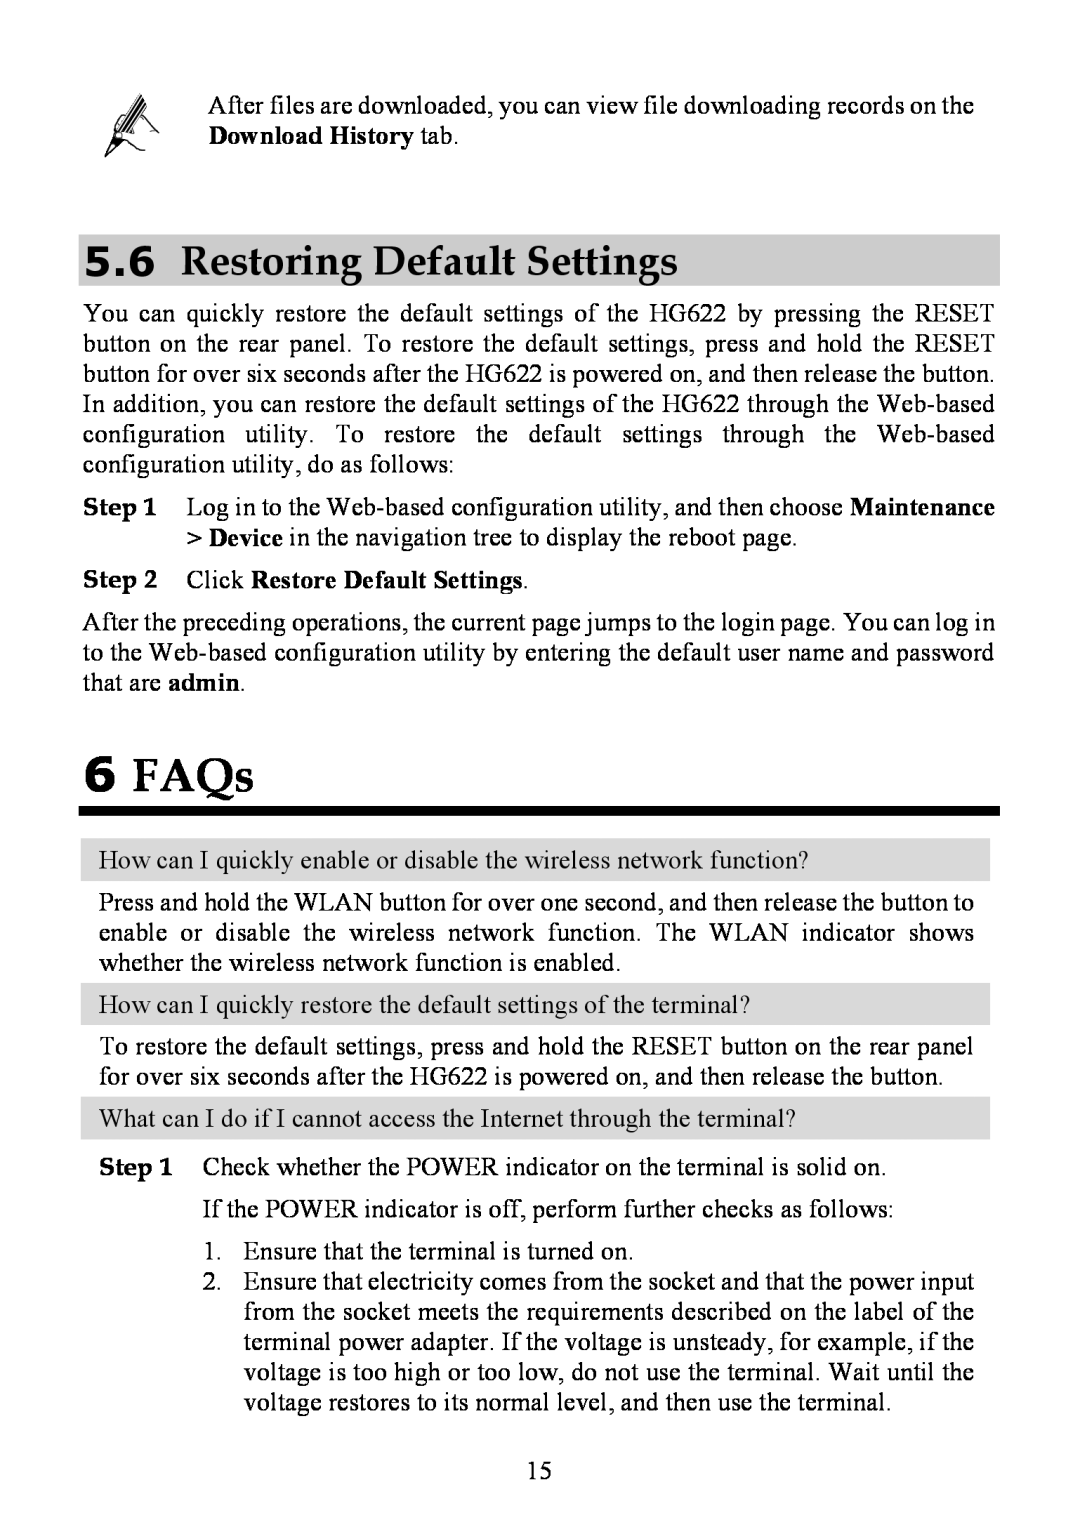 Huawei HG622 manual 6FAQs, 5.6Restoring Default Settings 